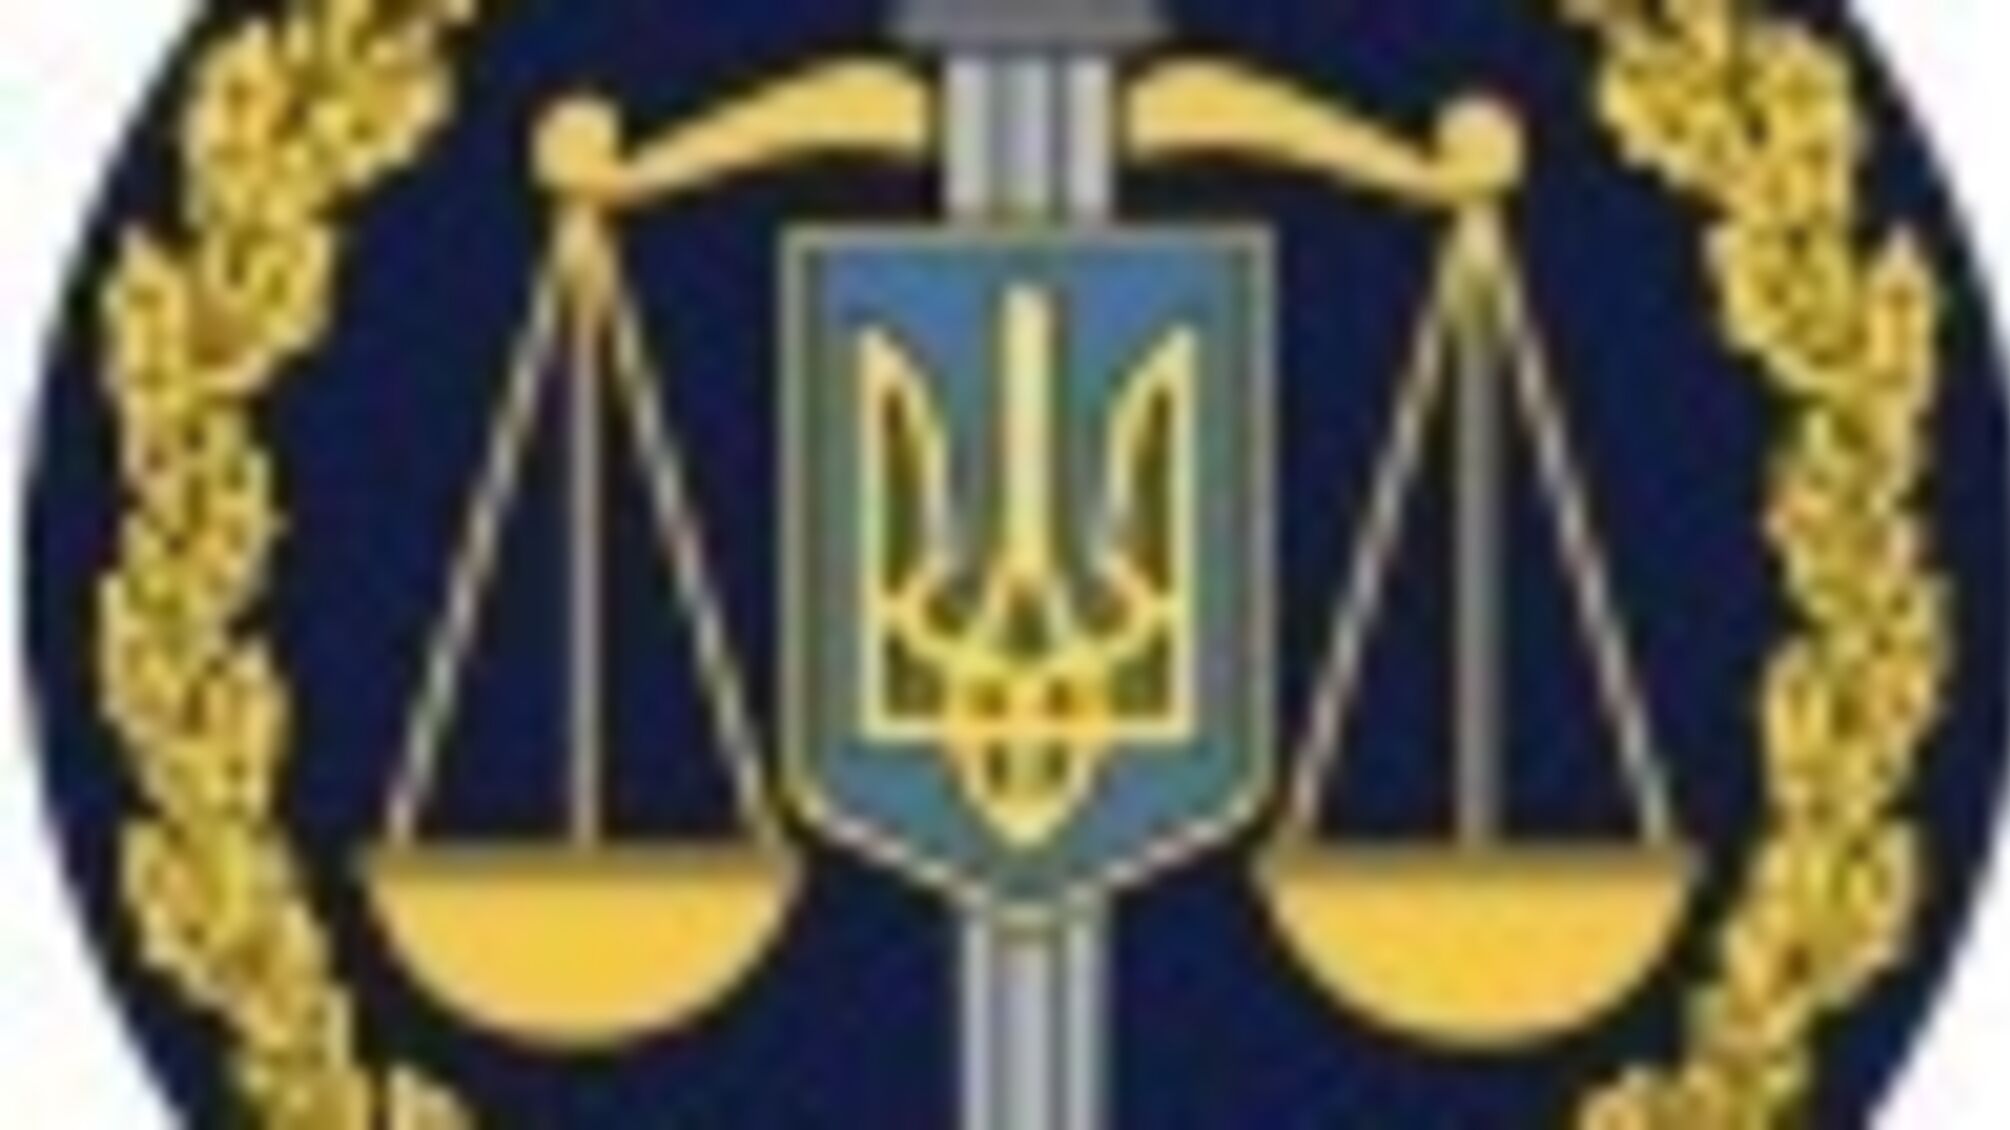 Спроба розтрати майна «Укрзалізниці» вартістю близько 100 тис. грн: службовець постане перед судом (ФОТО)